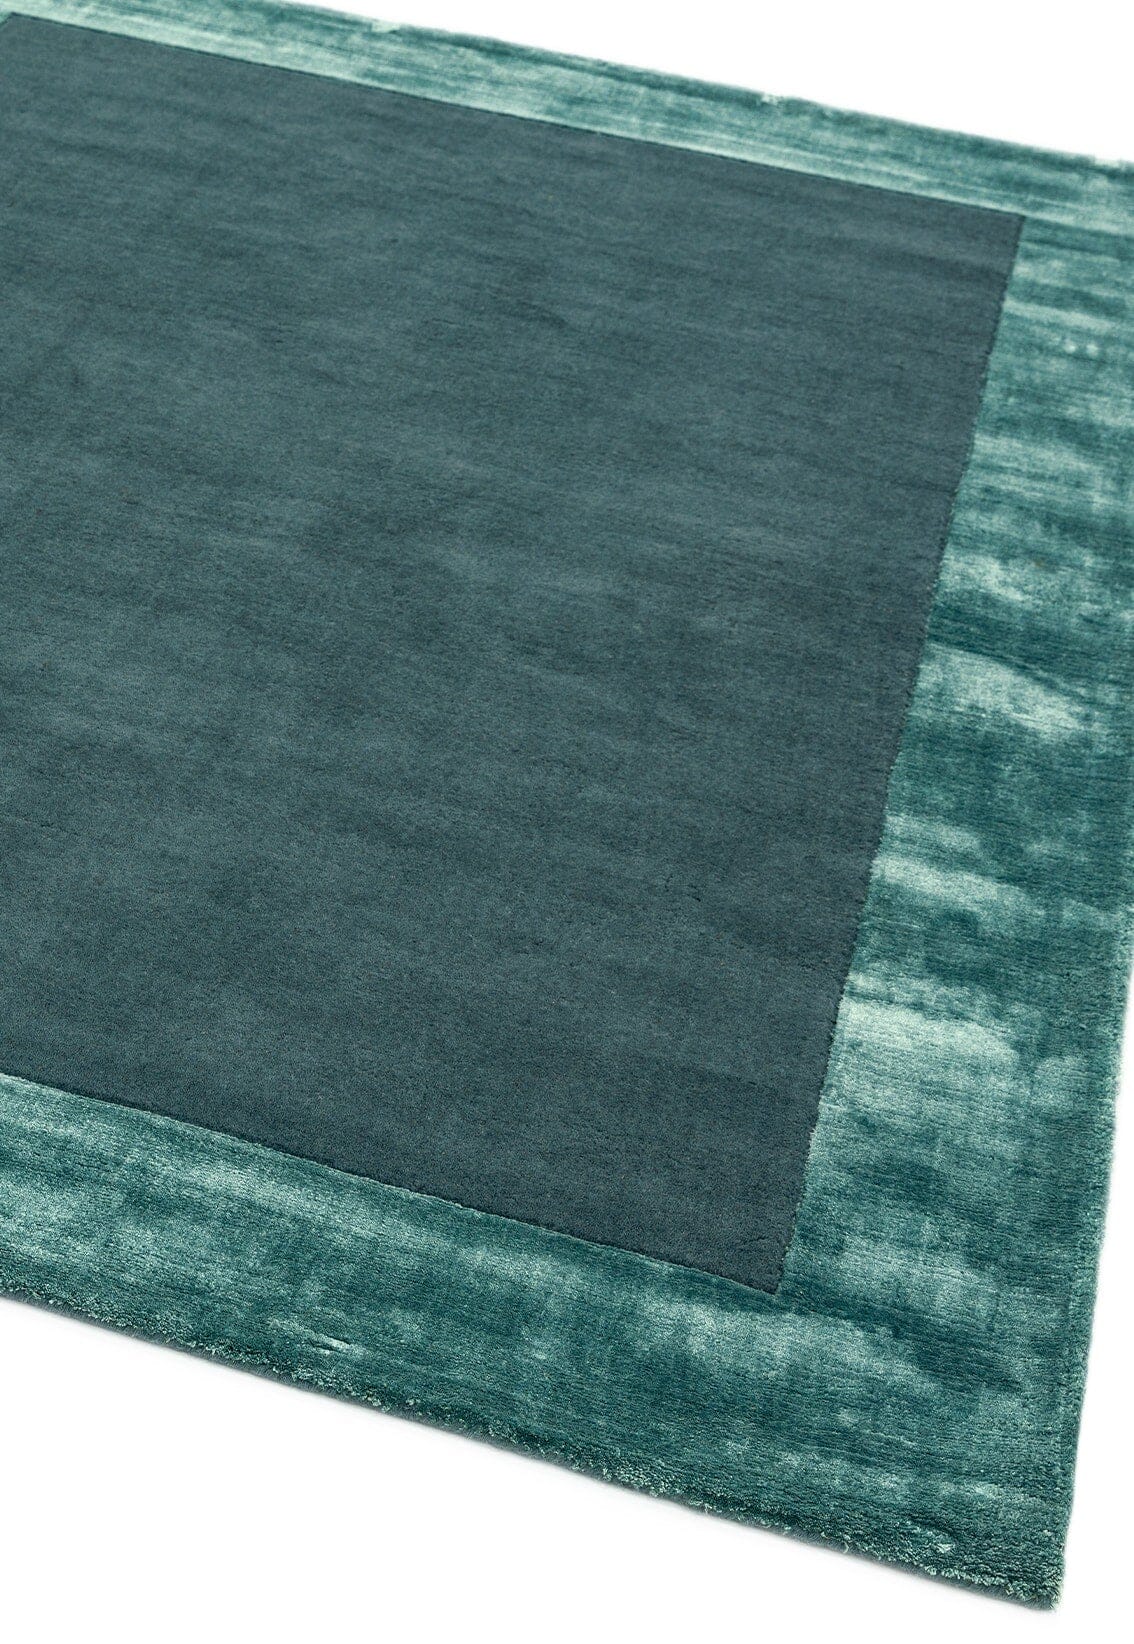 Asiatic Carpets Ascot Hand Woven Rug Aqua Blue - 80 x 150cm